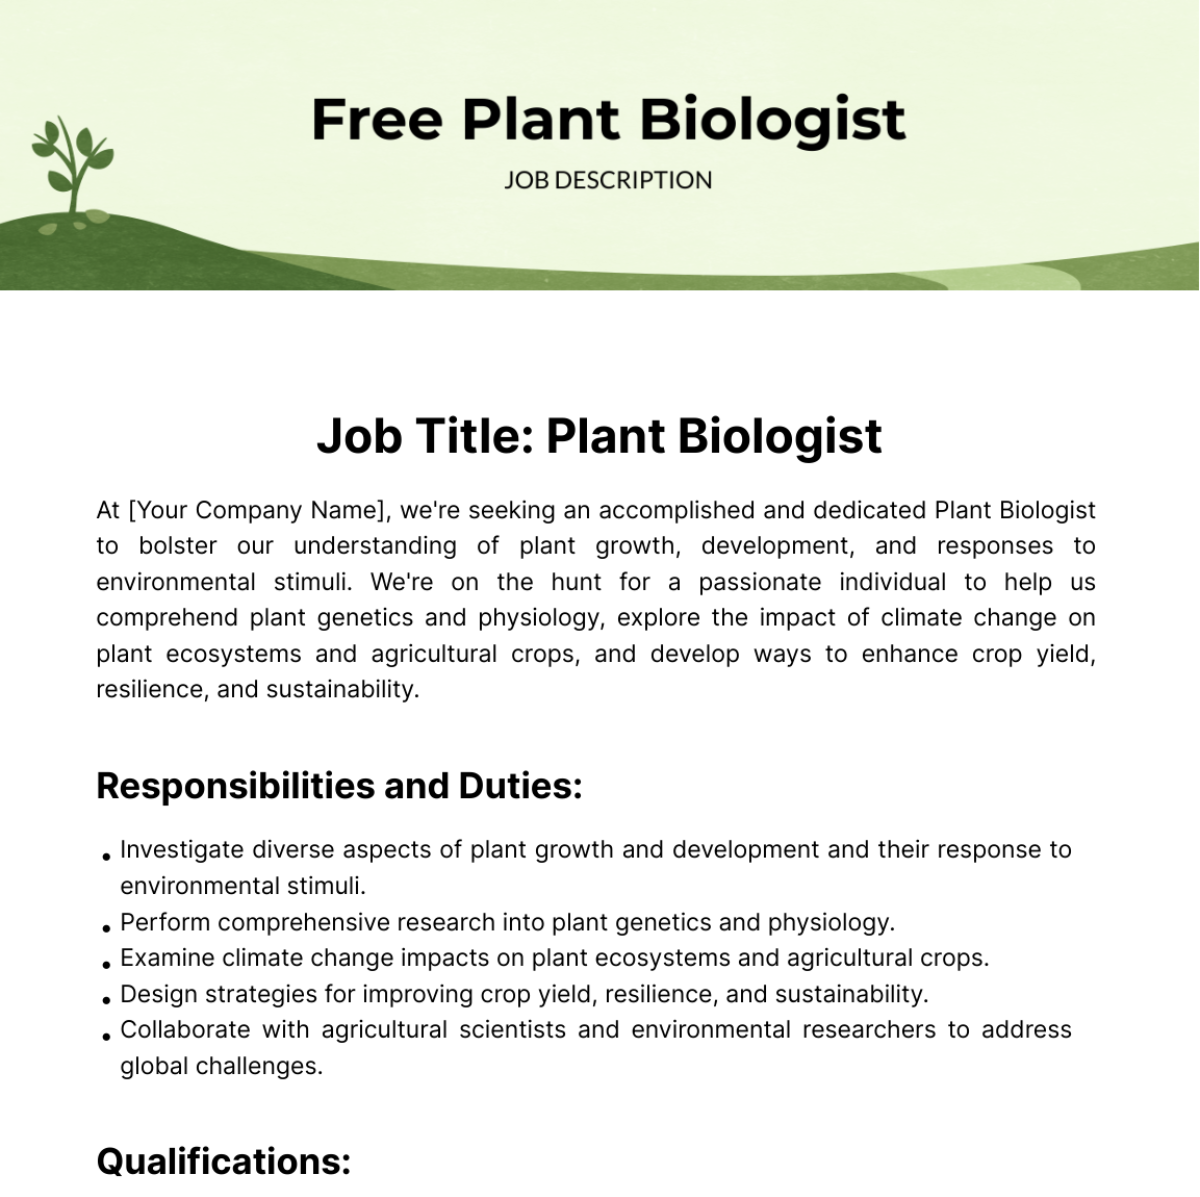 Free Plant Biologist Job Description Template